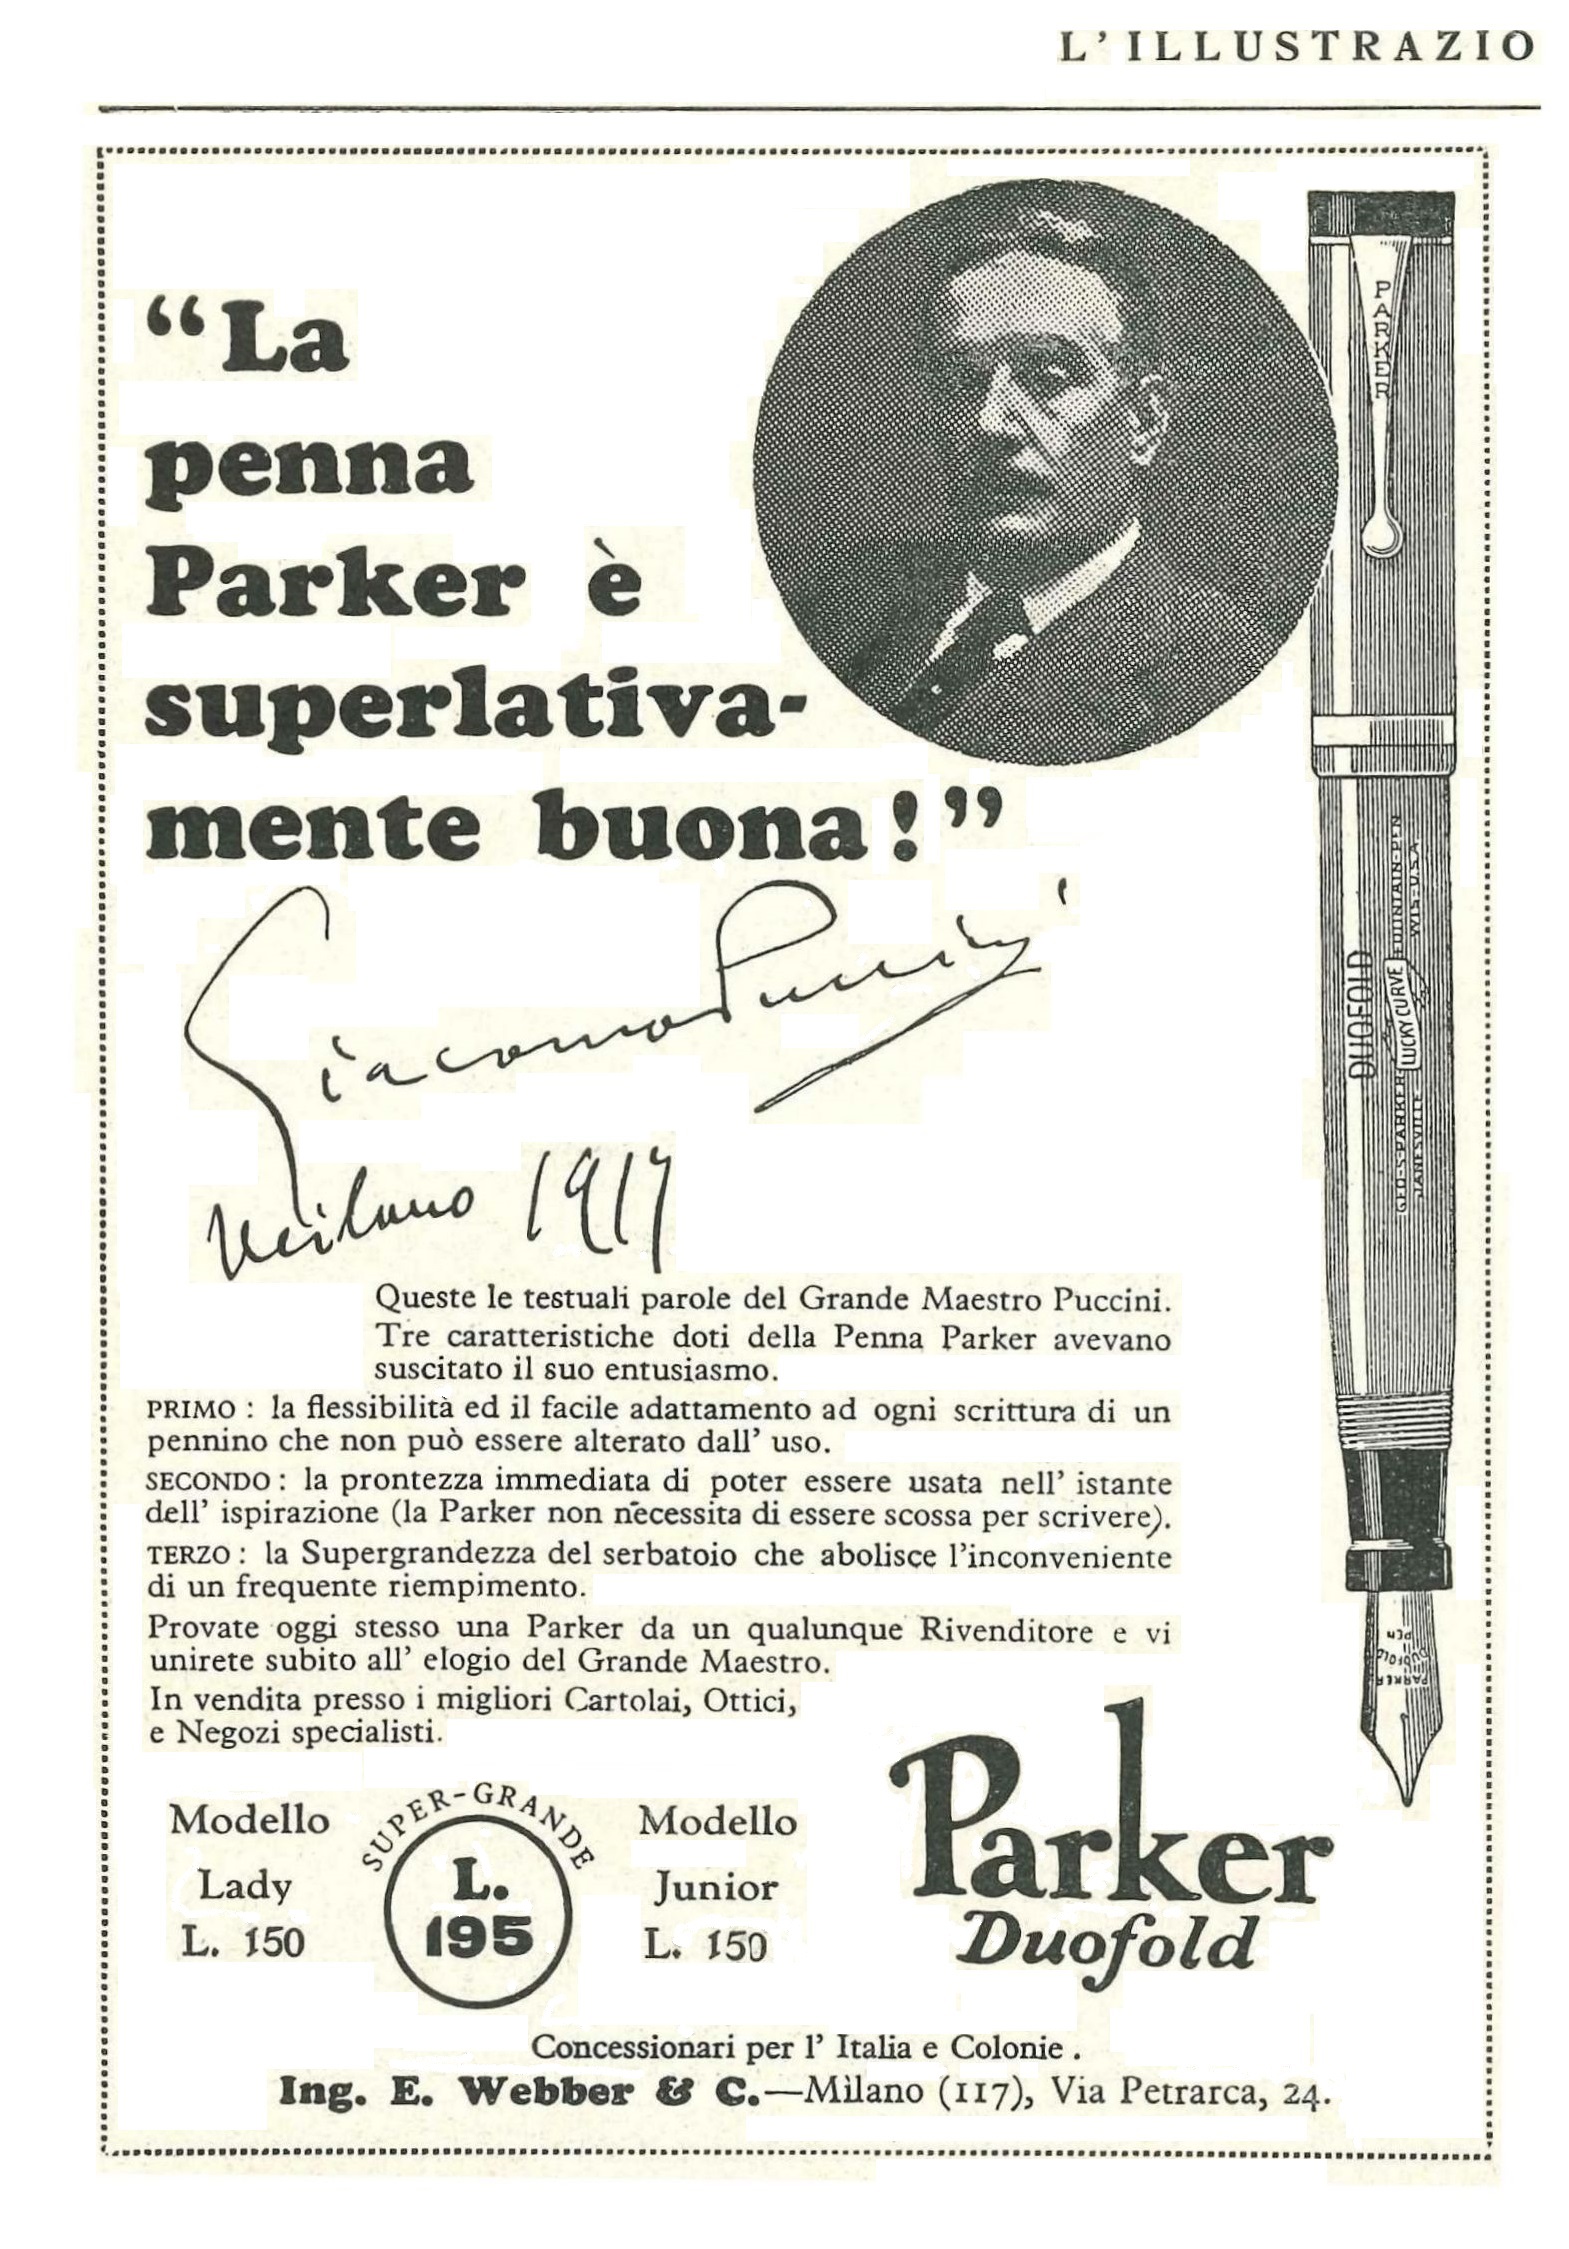 1. PARKER - Duofold PUCCINI - 1927-10-16. L'Illustrazione Italiana - Anno LIV - N.42, pag.III - Copia.jpg